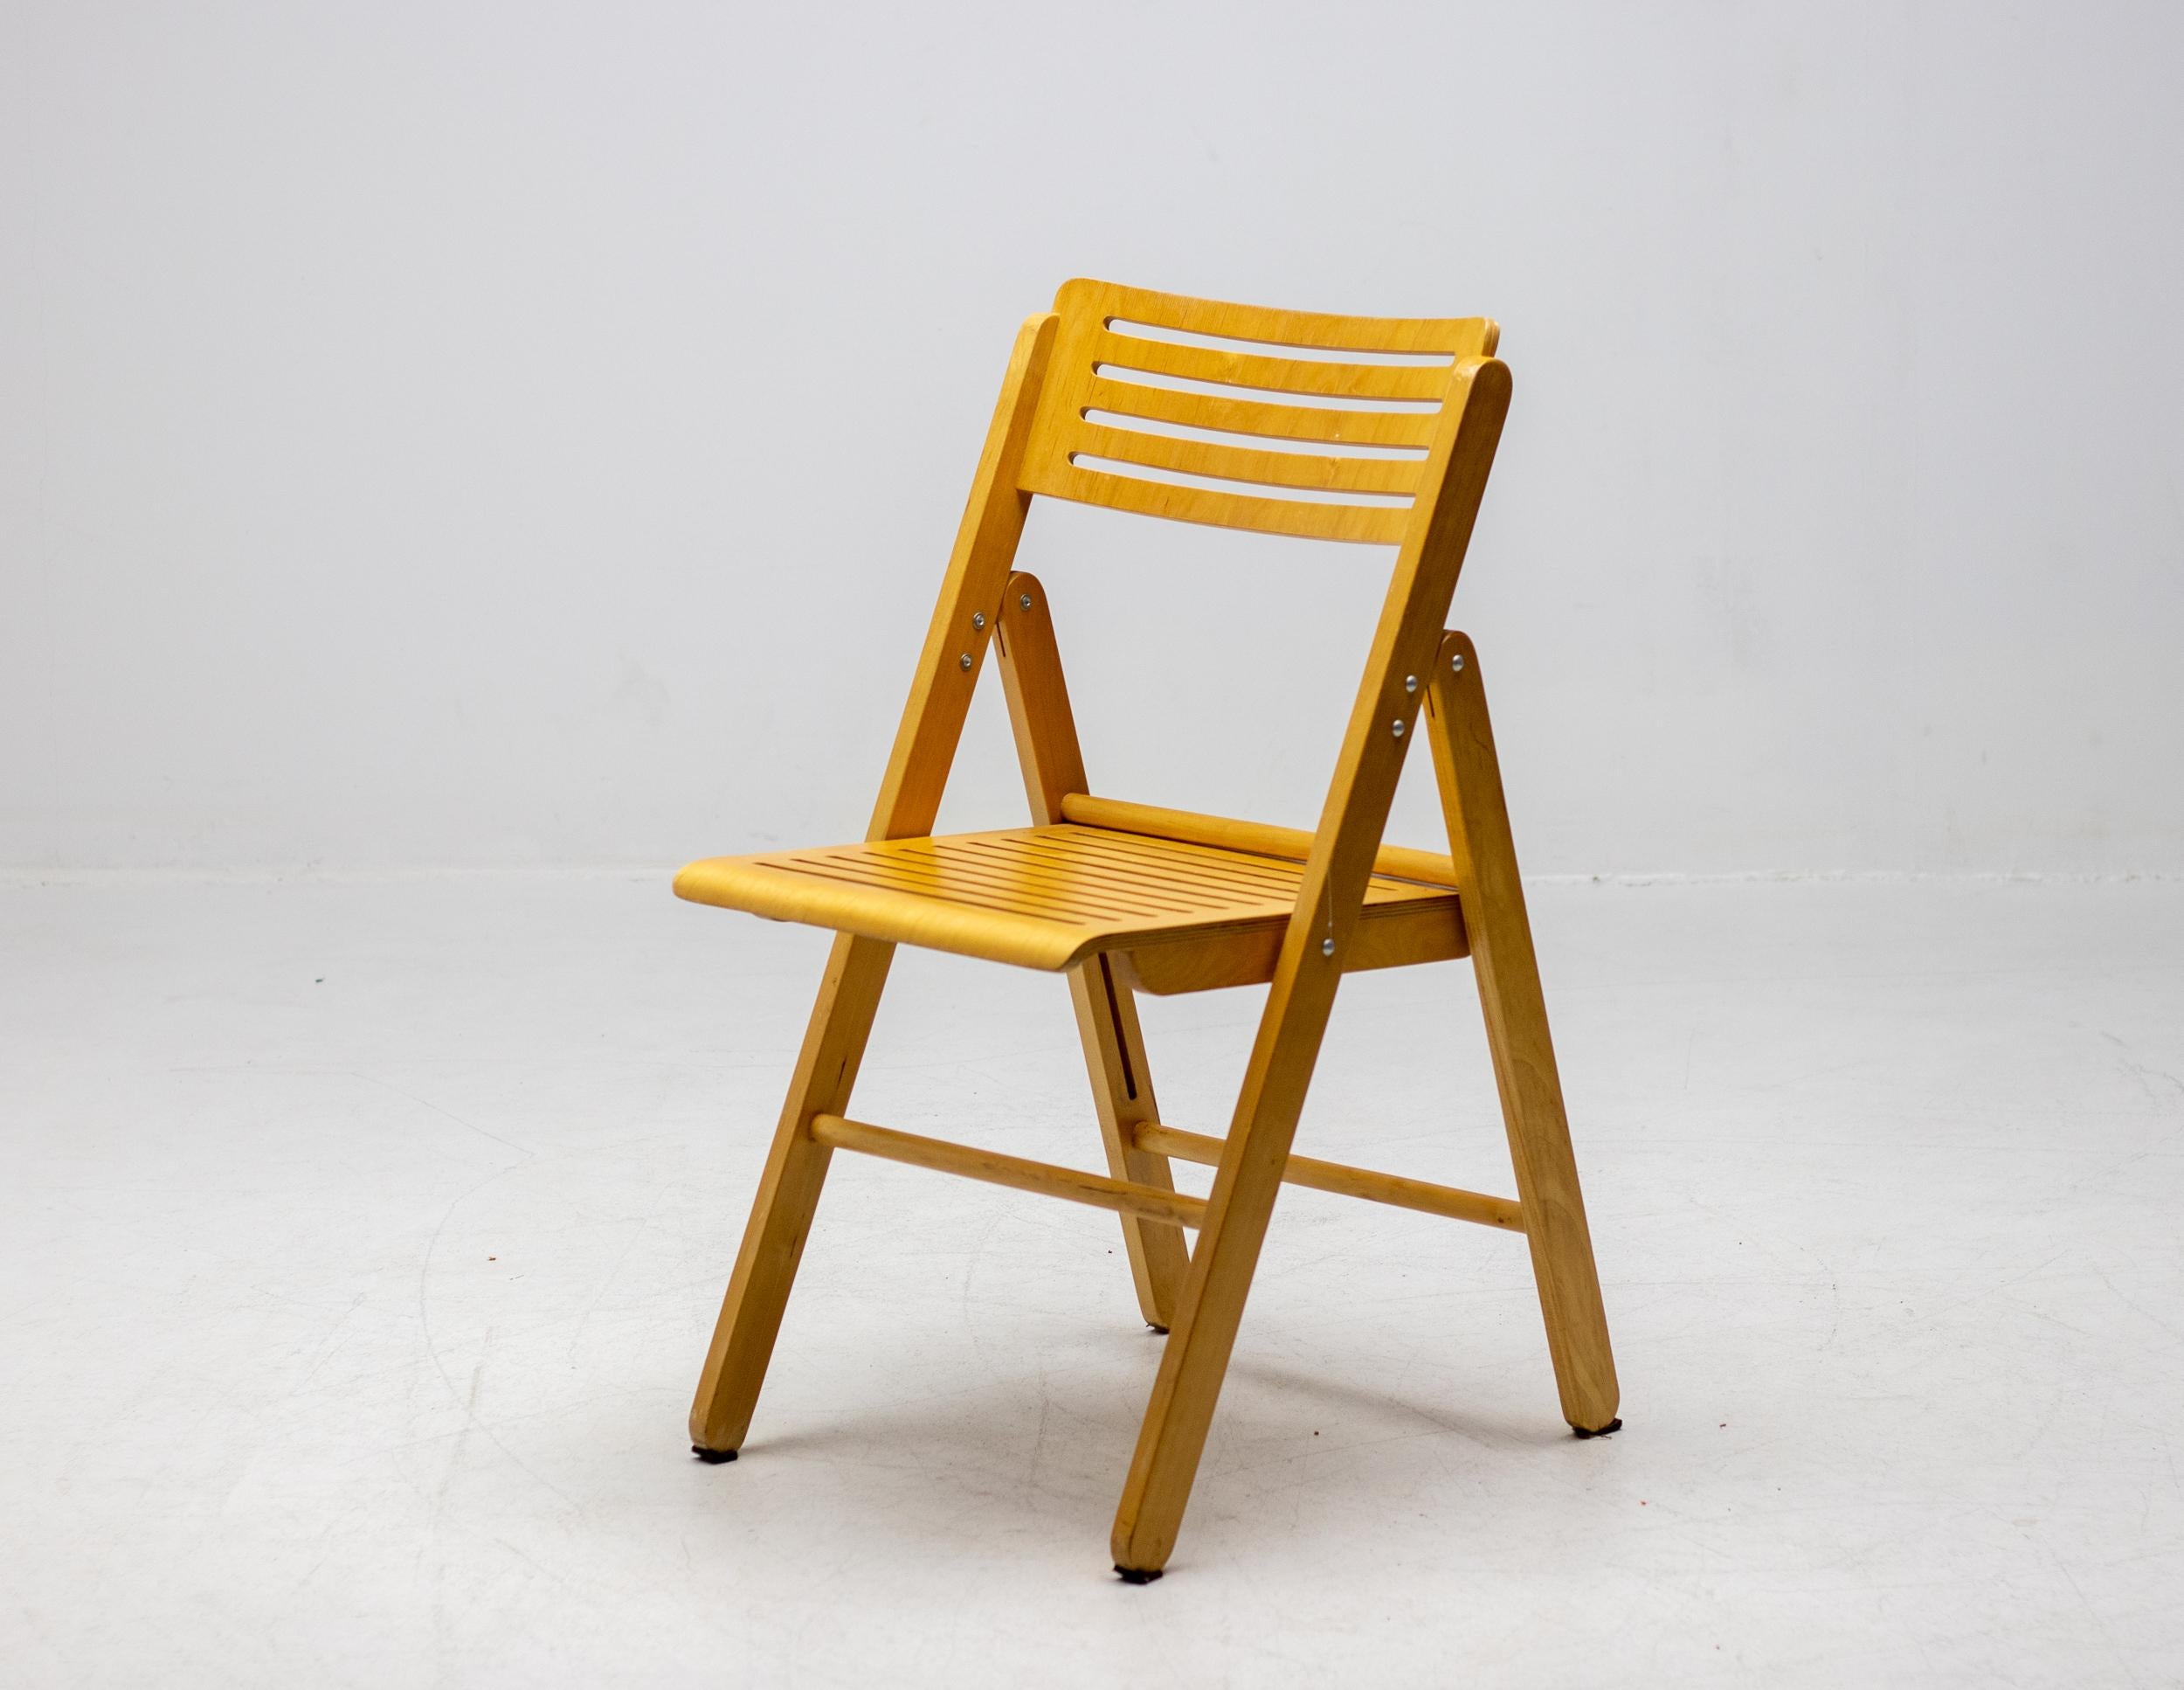 Ensemble de 4 chaises pliantes en contreplaqué, fabriquées aux Pays-Bas vers 1980.  Chaises ingénieuses, pratiques et robustes en très bon état. Ces chaises pliantes offrent une solution d'assise polyvalente avec de nombreux avantages. Leur